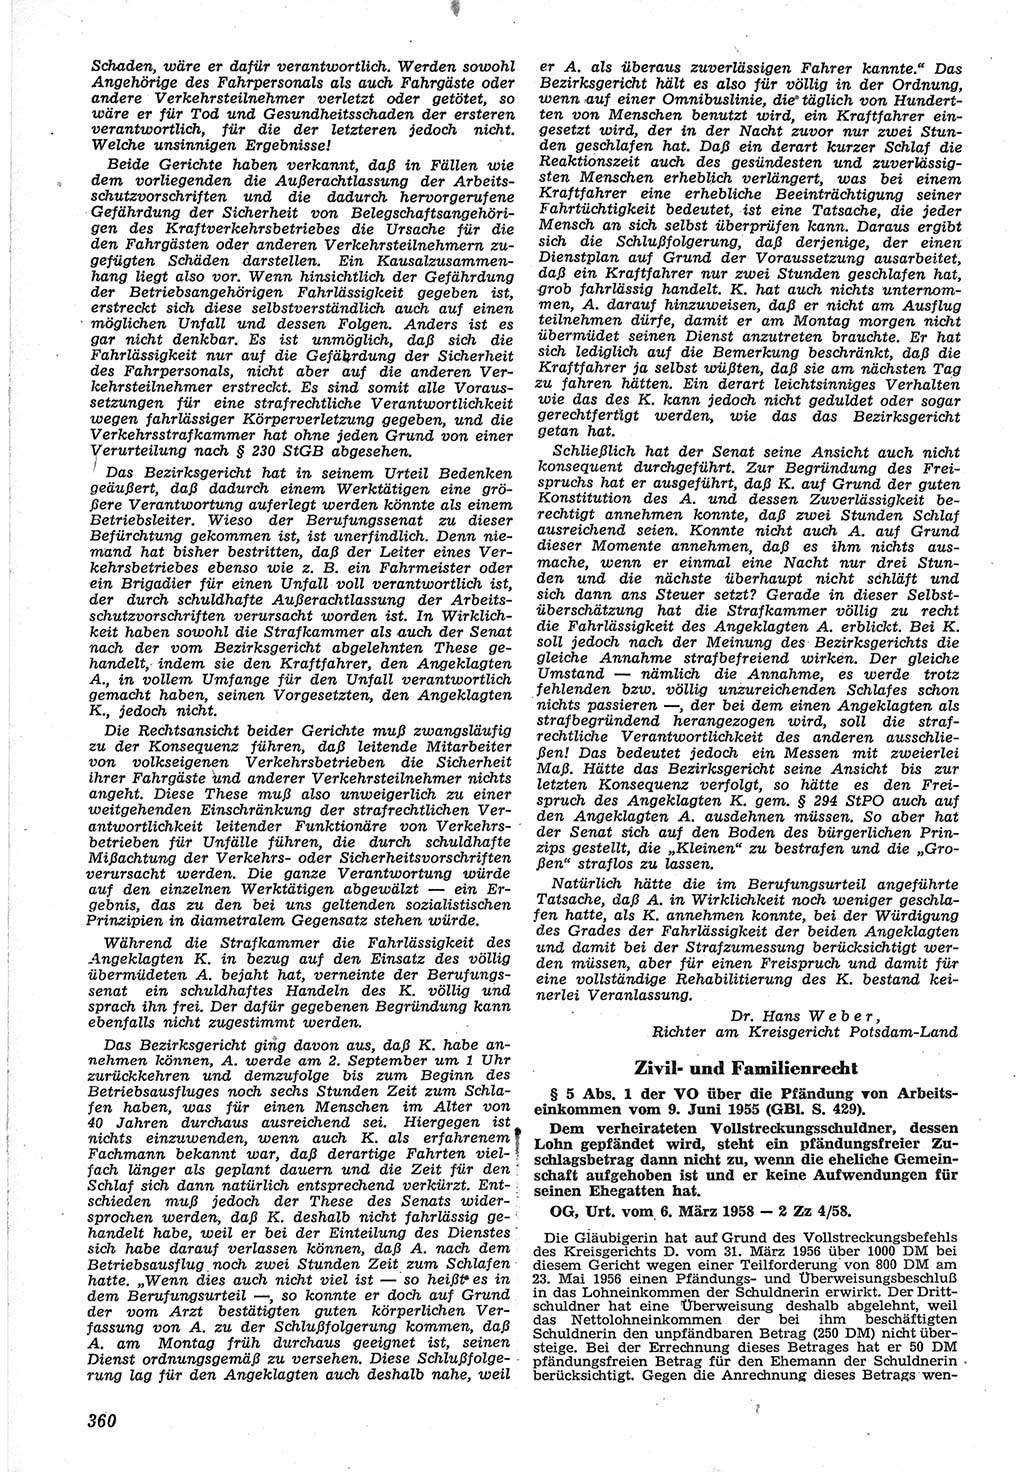 Neue Justiz (NJ), Zeitschrift für Recht und Rechtswissenschaft [Deutsche Demokratische Republik (DDR)], 12. Jahrgang 1958, Seite 360 (NJ DDR 1958, S. 360)